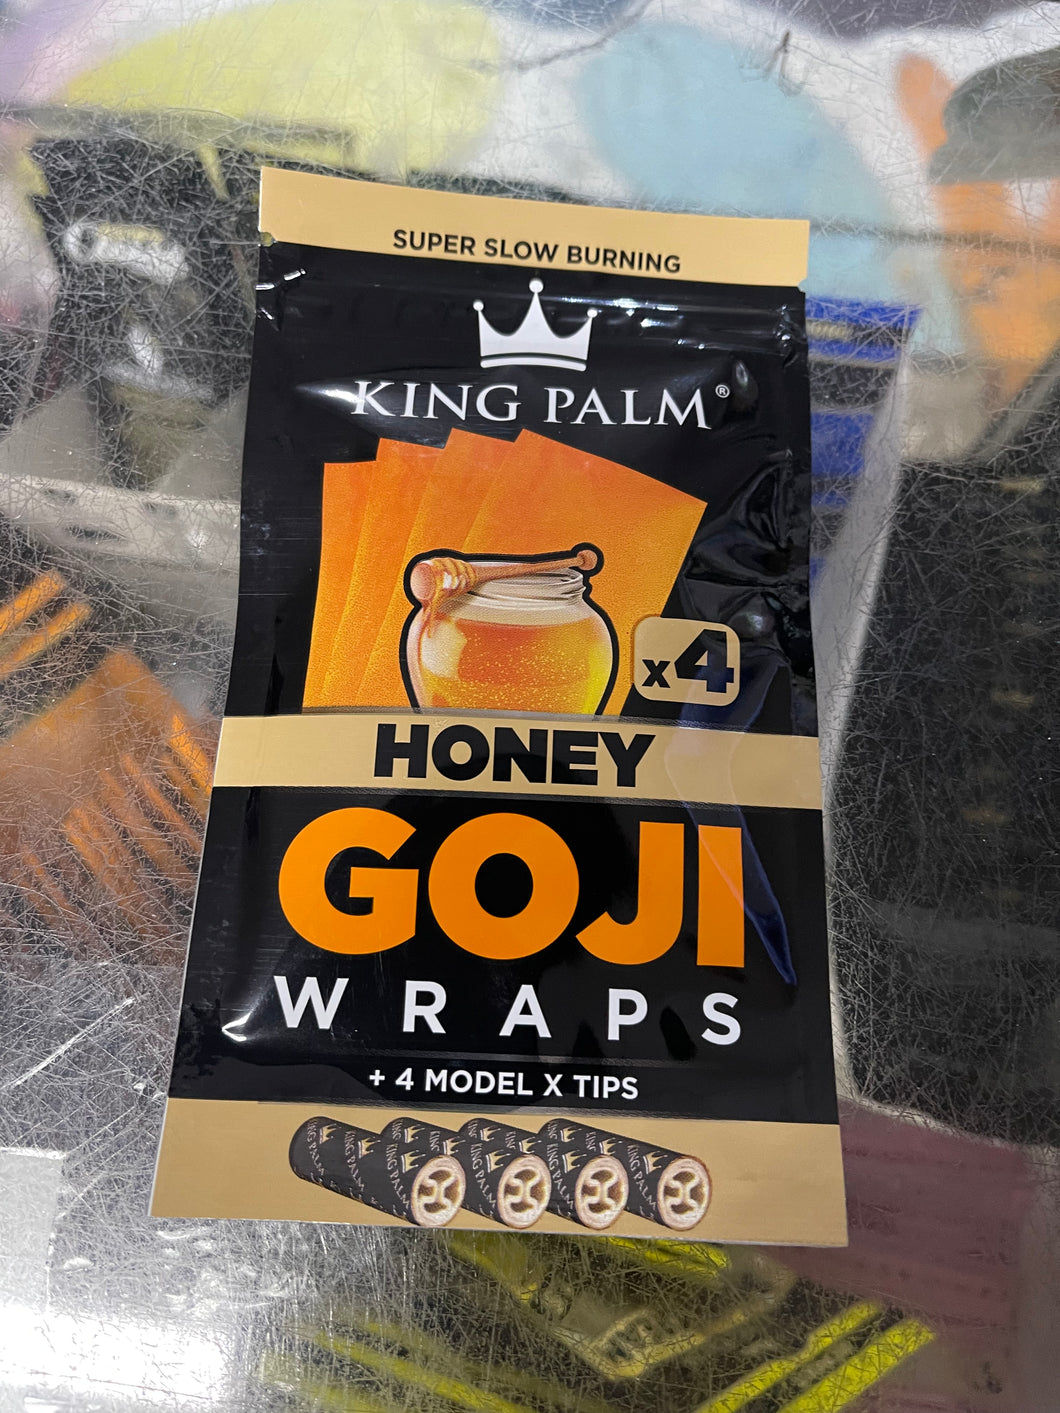 King Palm Honey Goji Wraps